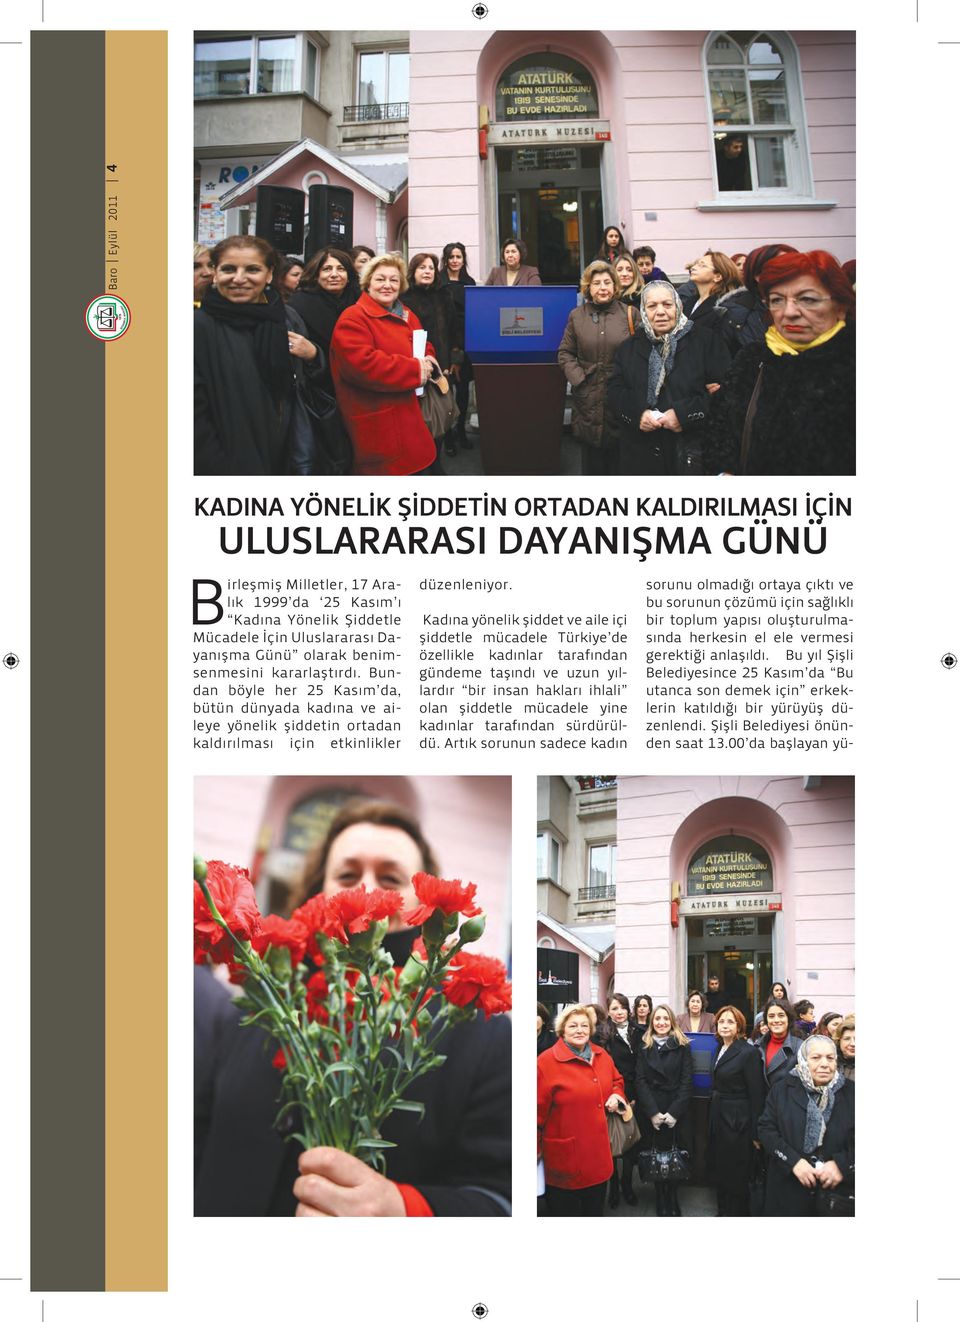 Kadına yönelik şiddet ve aile içi şiddetle mücadele Türkiye de özellikle kadınlar tarafından gündeme taşındı ve uzun yıllardır bir insan hakları ihlali olan şiddetle mücadele yine kadınlar tarafından